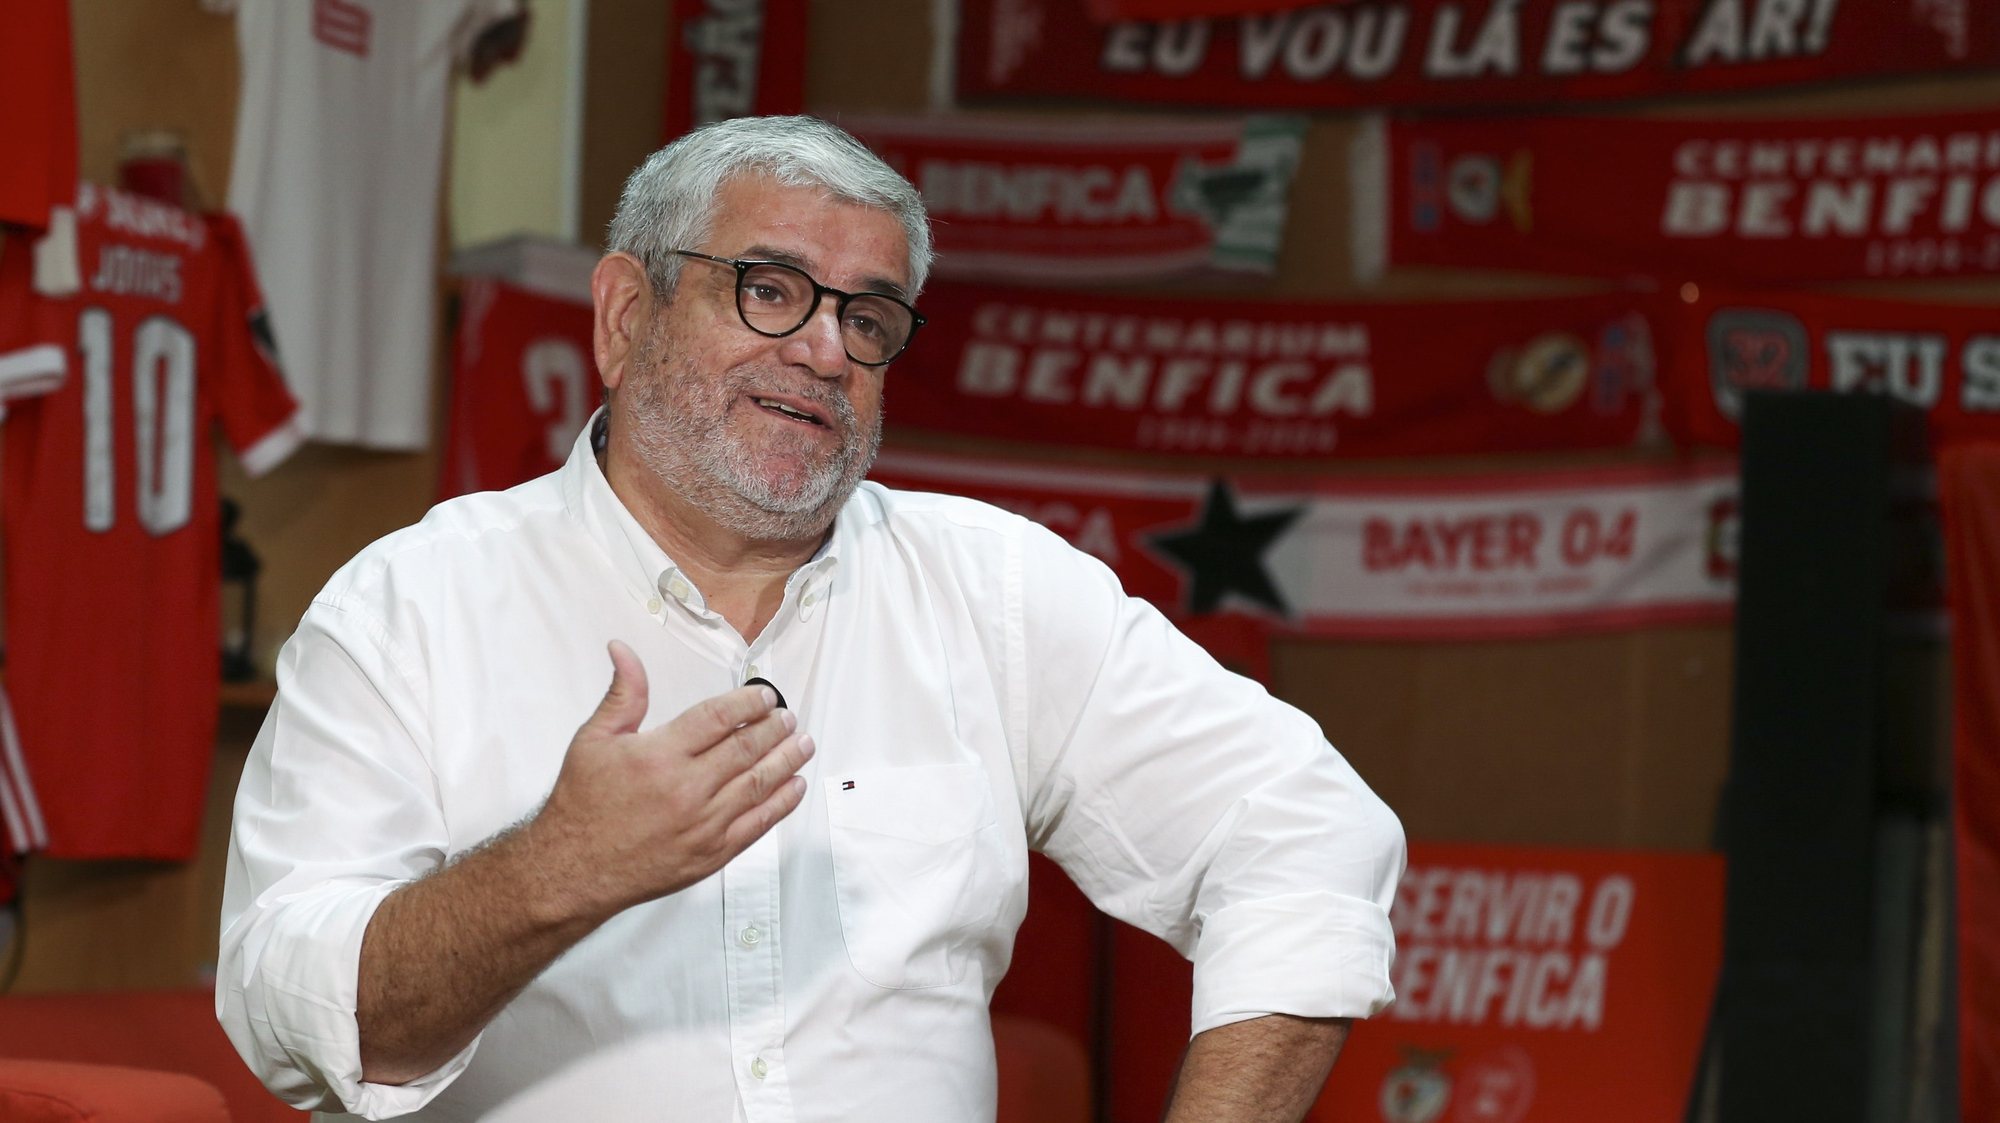 Francisco Benitez, candidato à presidência do SL Benfica, durante entrevista à Agência Lusa na sede de candidatura, em Lisboa, 4 de outubro de 2021. ( ACOMPANHA TEXTO DO DIA 7 DE OUTUBRO DE 2021). MANUEL DE ALMEIDA/LUSA